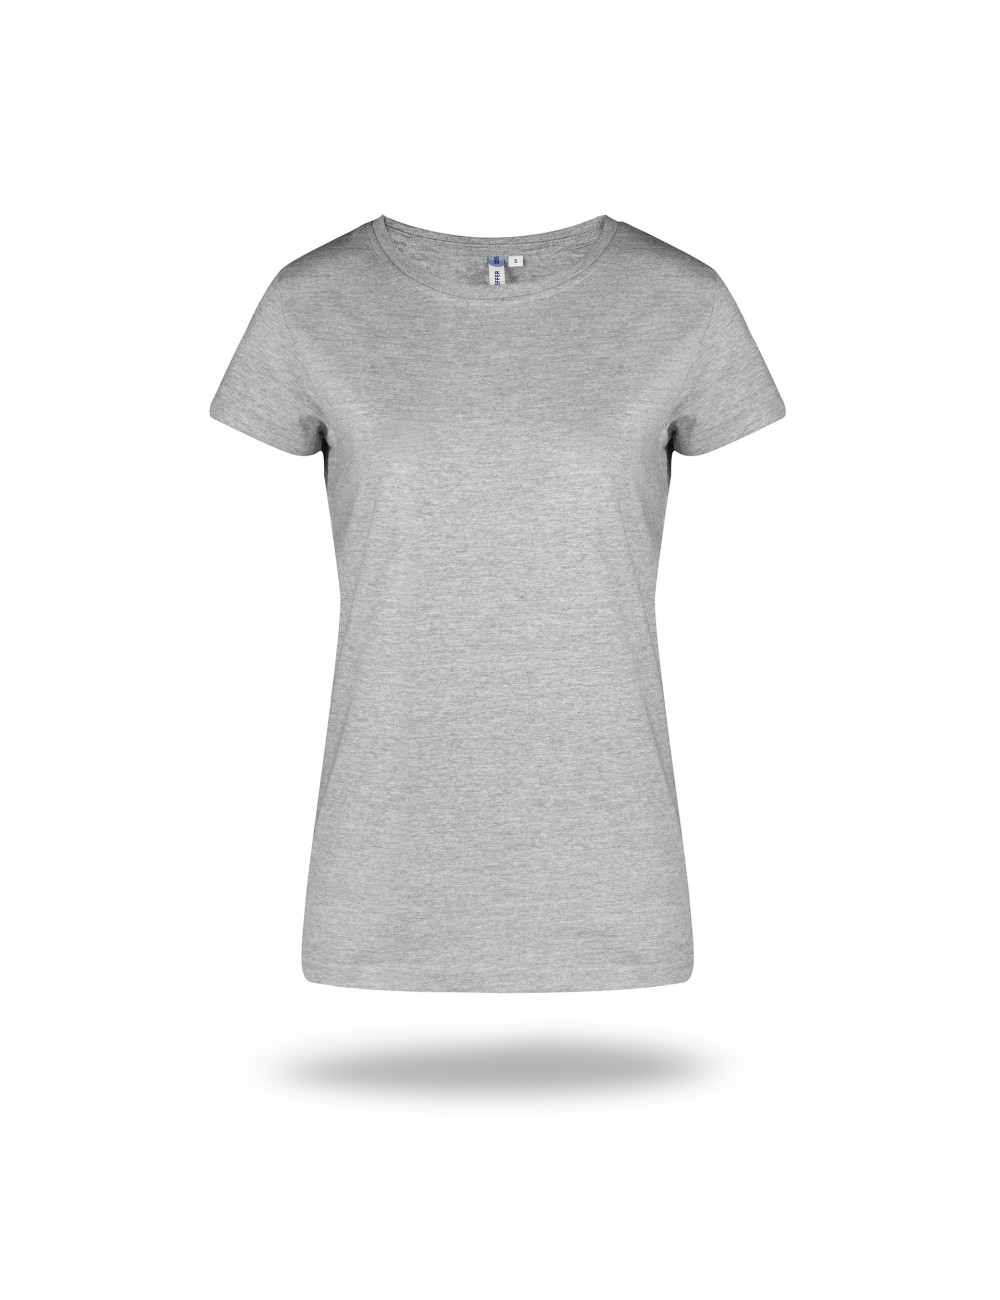 T-shirt for women 205 light gray melange Geffer